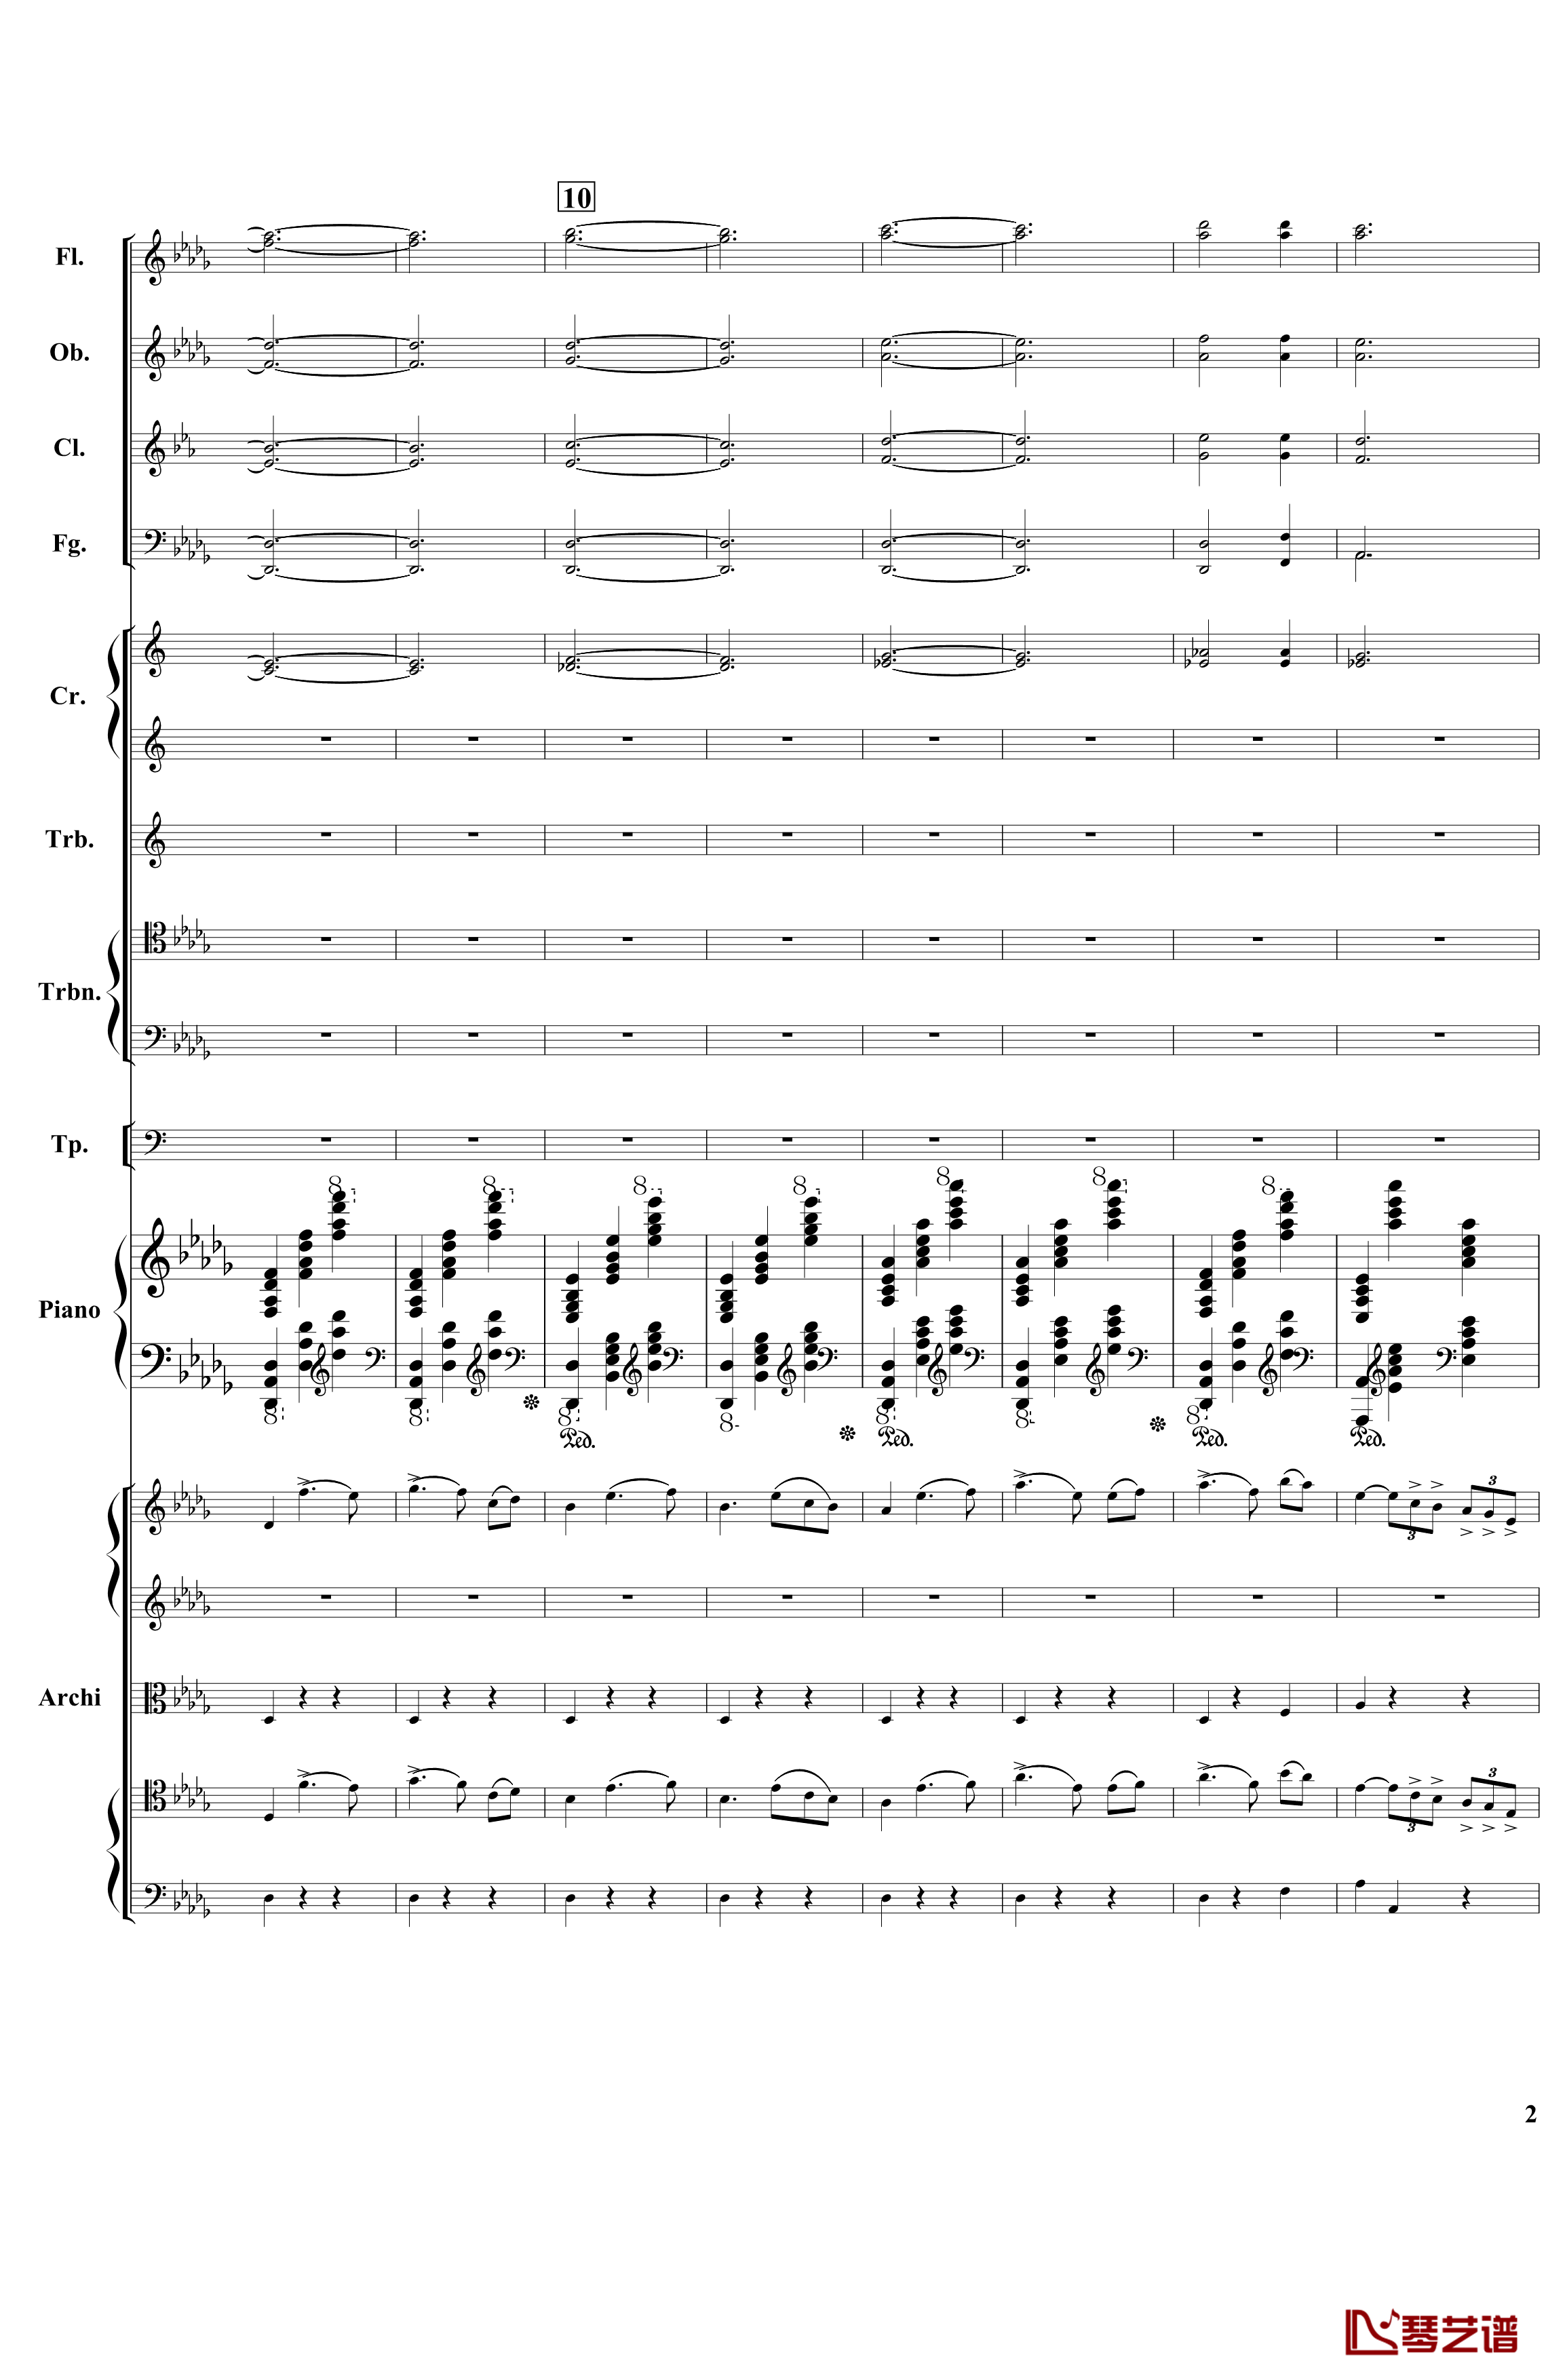 降B小调第一钢琴协奏曲钢琴谱-总谱-部分-柴科夫斯基-Peter Ilyich Tchaikovsky2